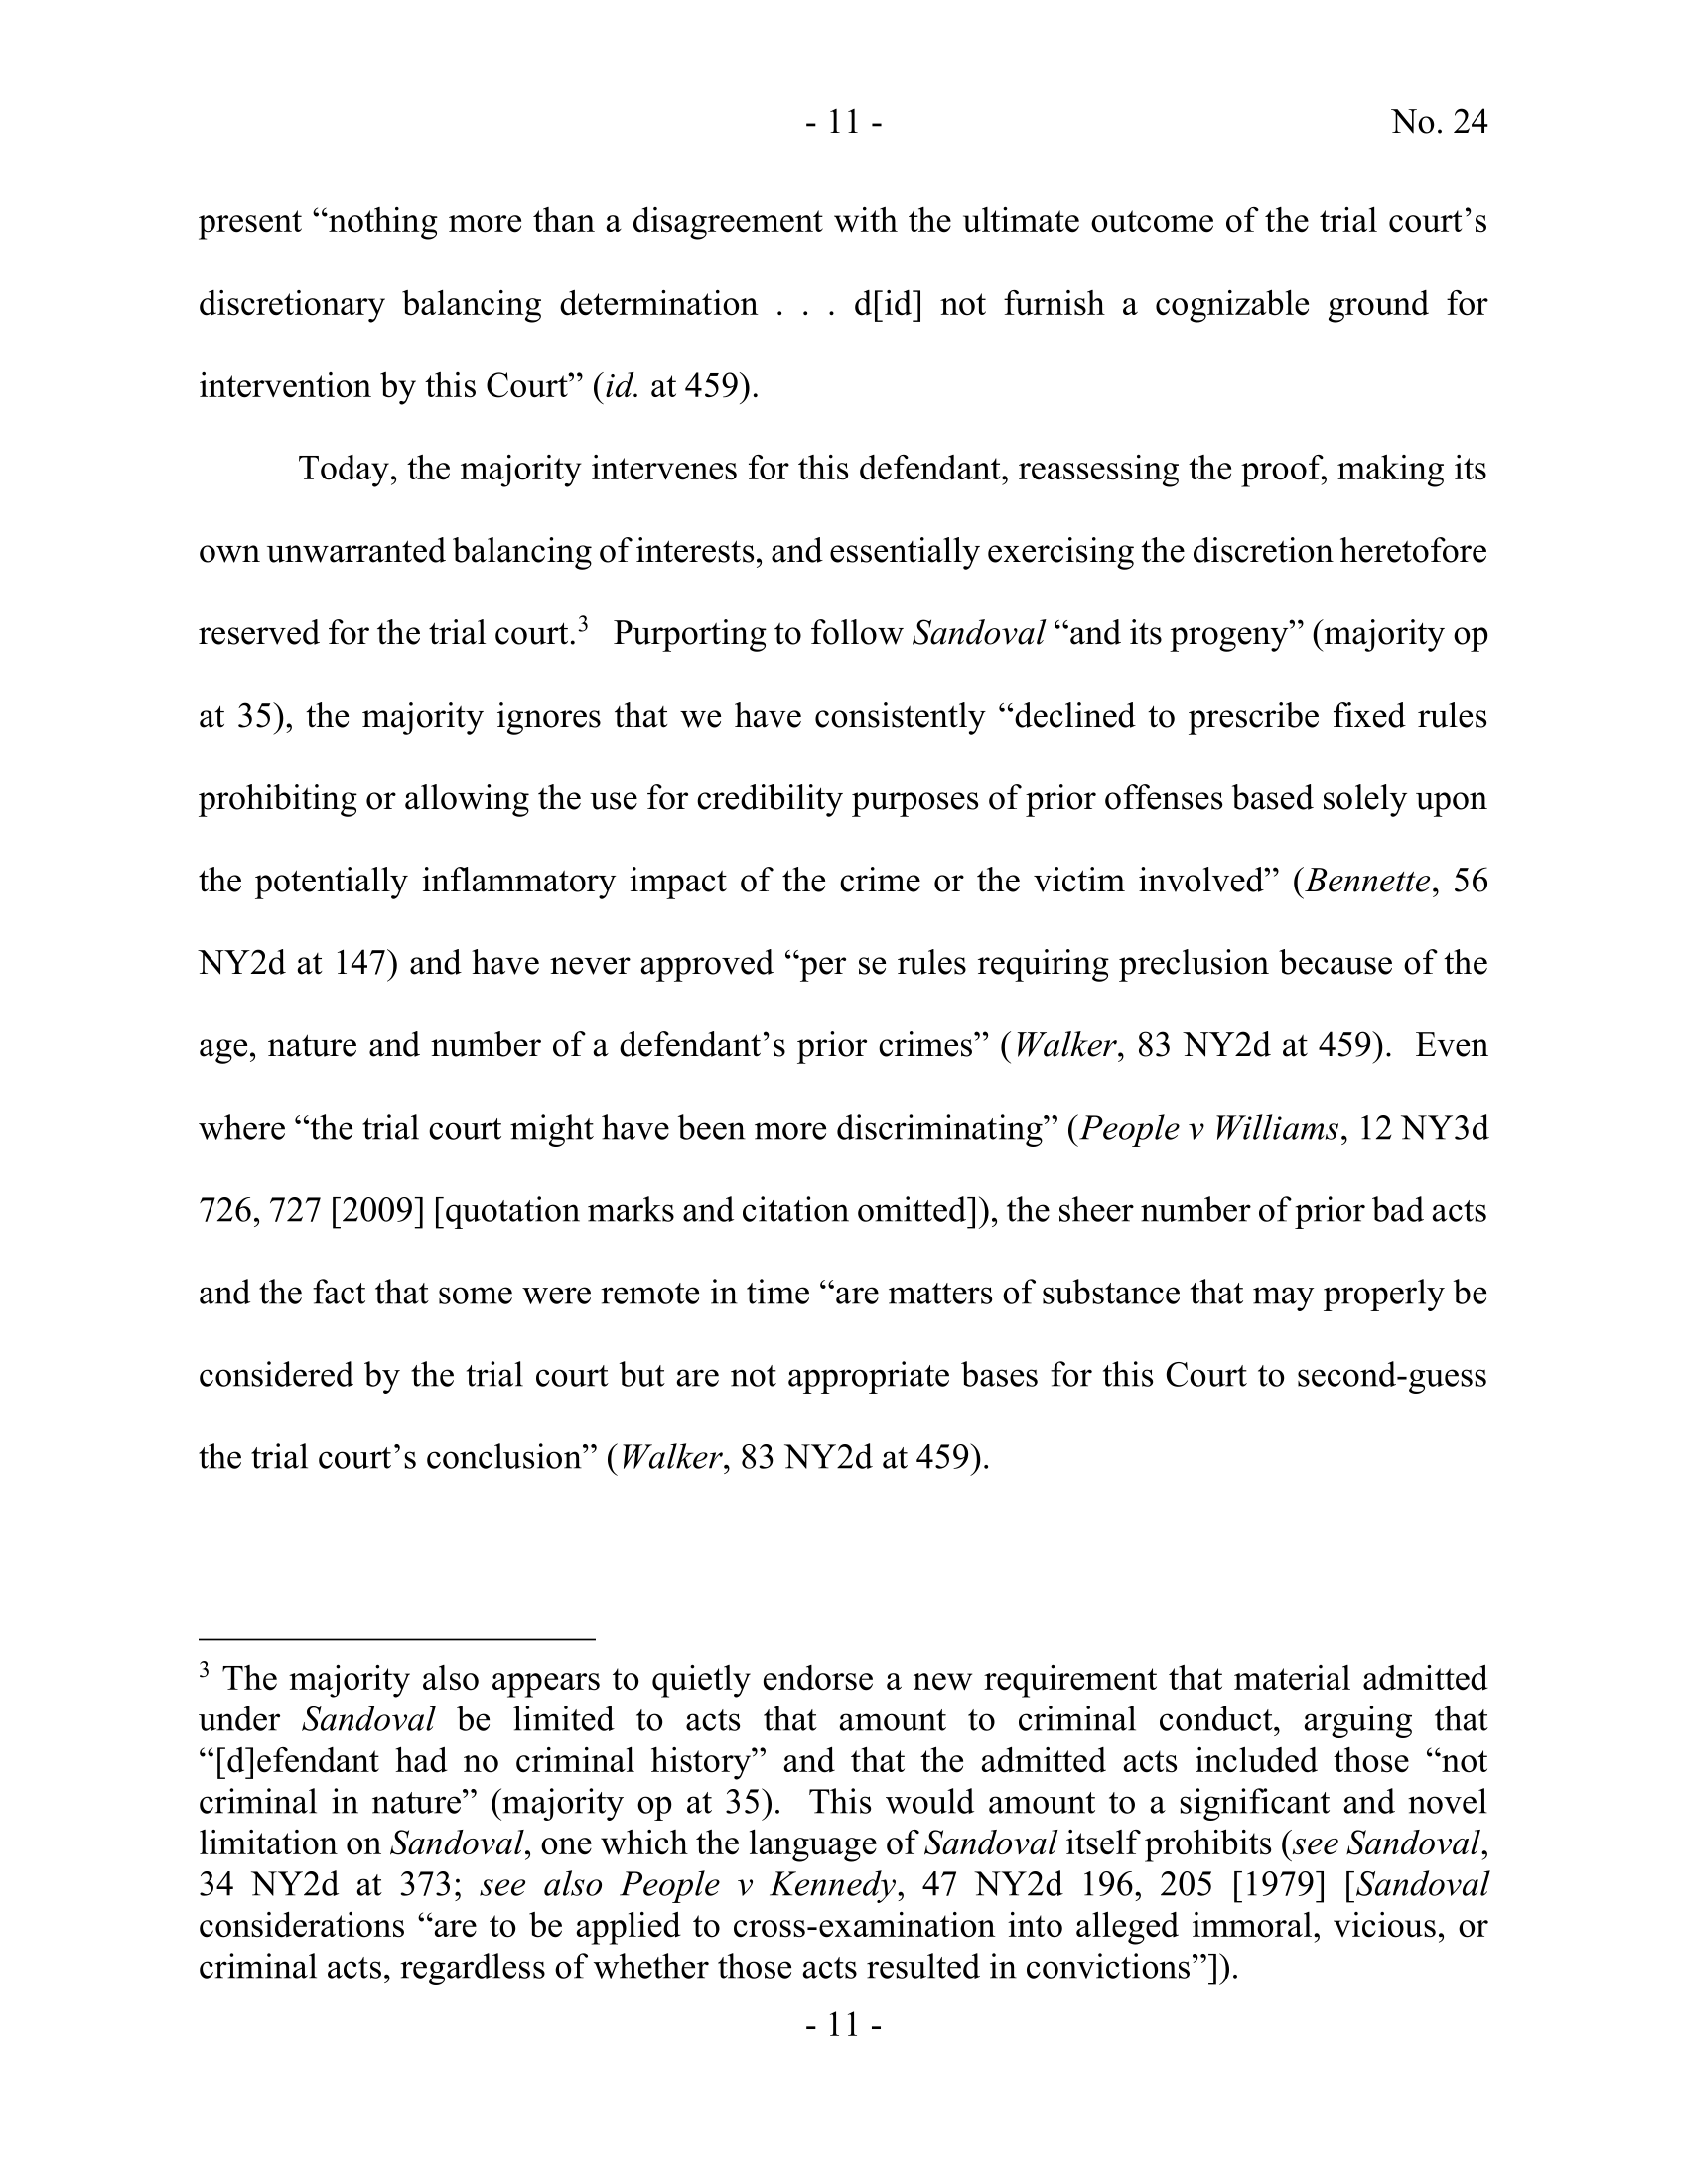 Seite 75 eines undefinierten PDF-Dokuments.